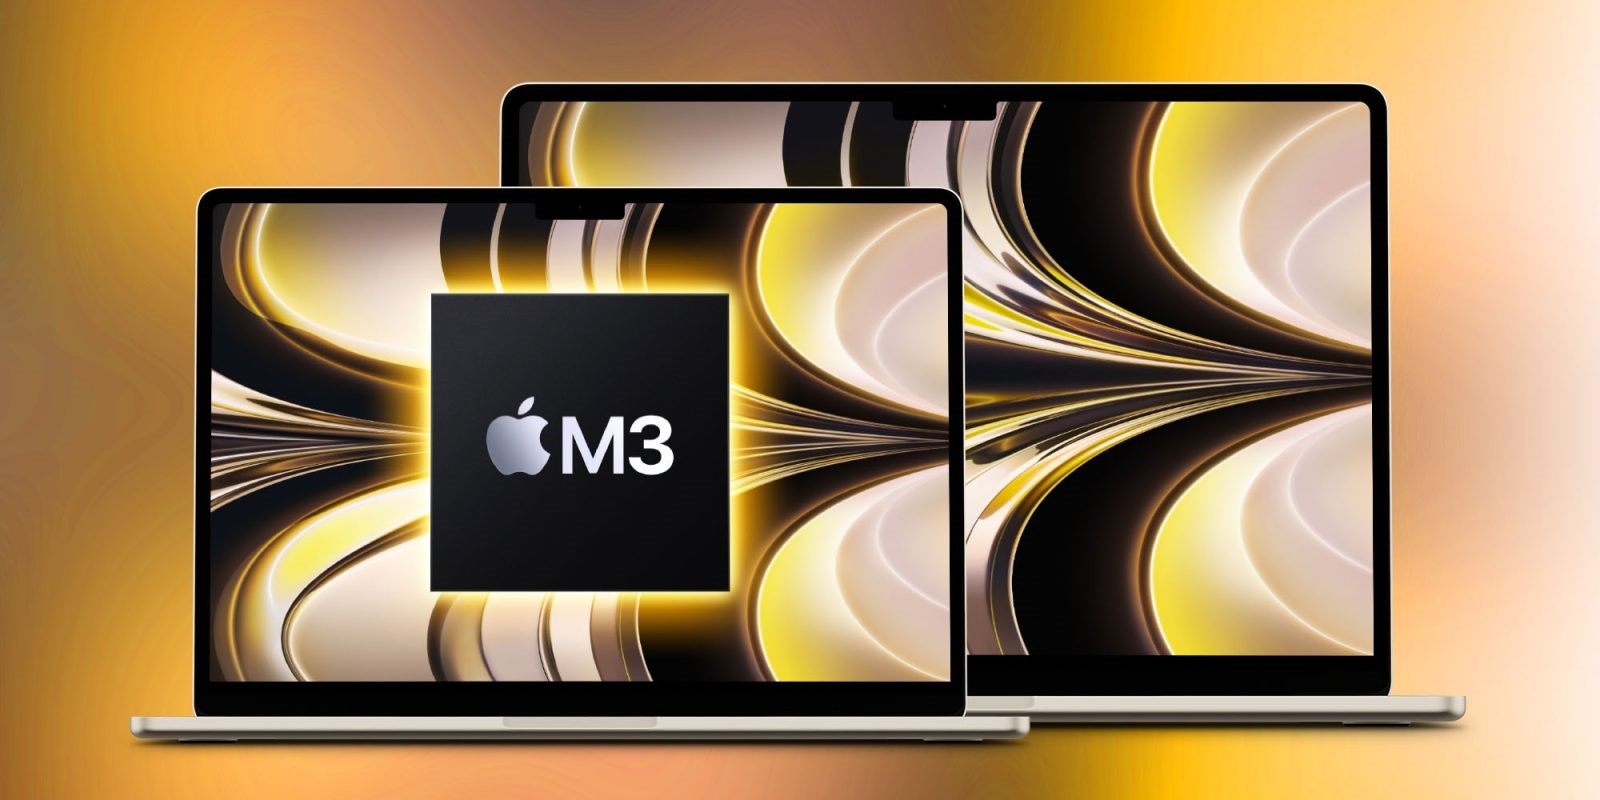 15 inç MacBook Air geliyor: Ekran üretimi hızlandı